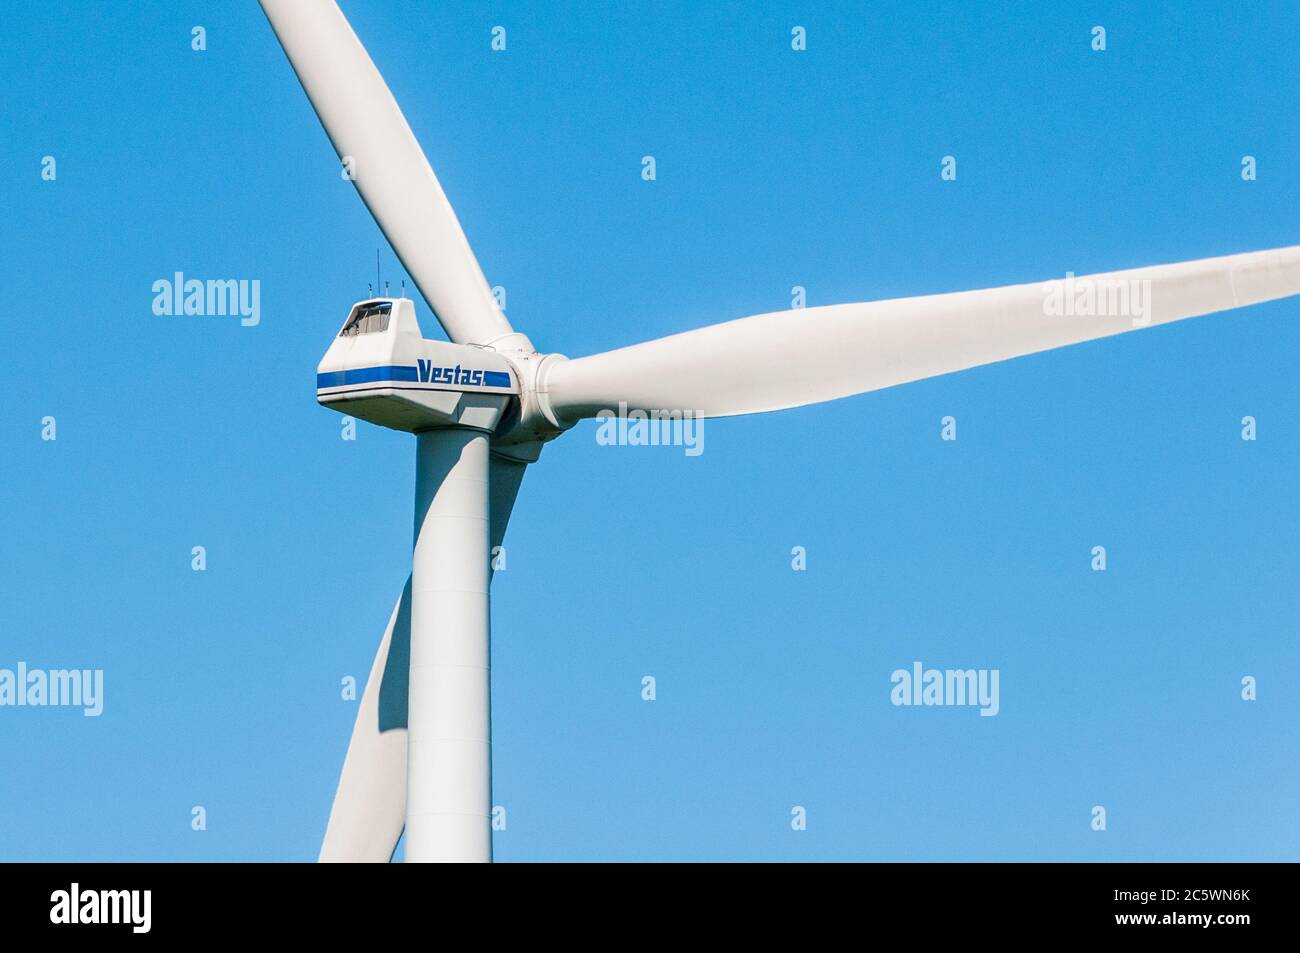 Windkraftanlagen auf einem Feld In Schleswig-Holstein Stock Photo